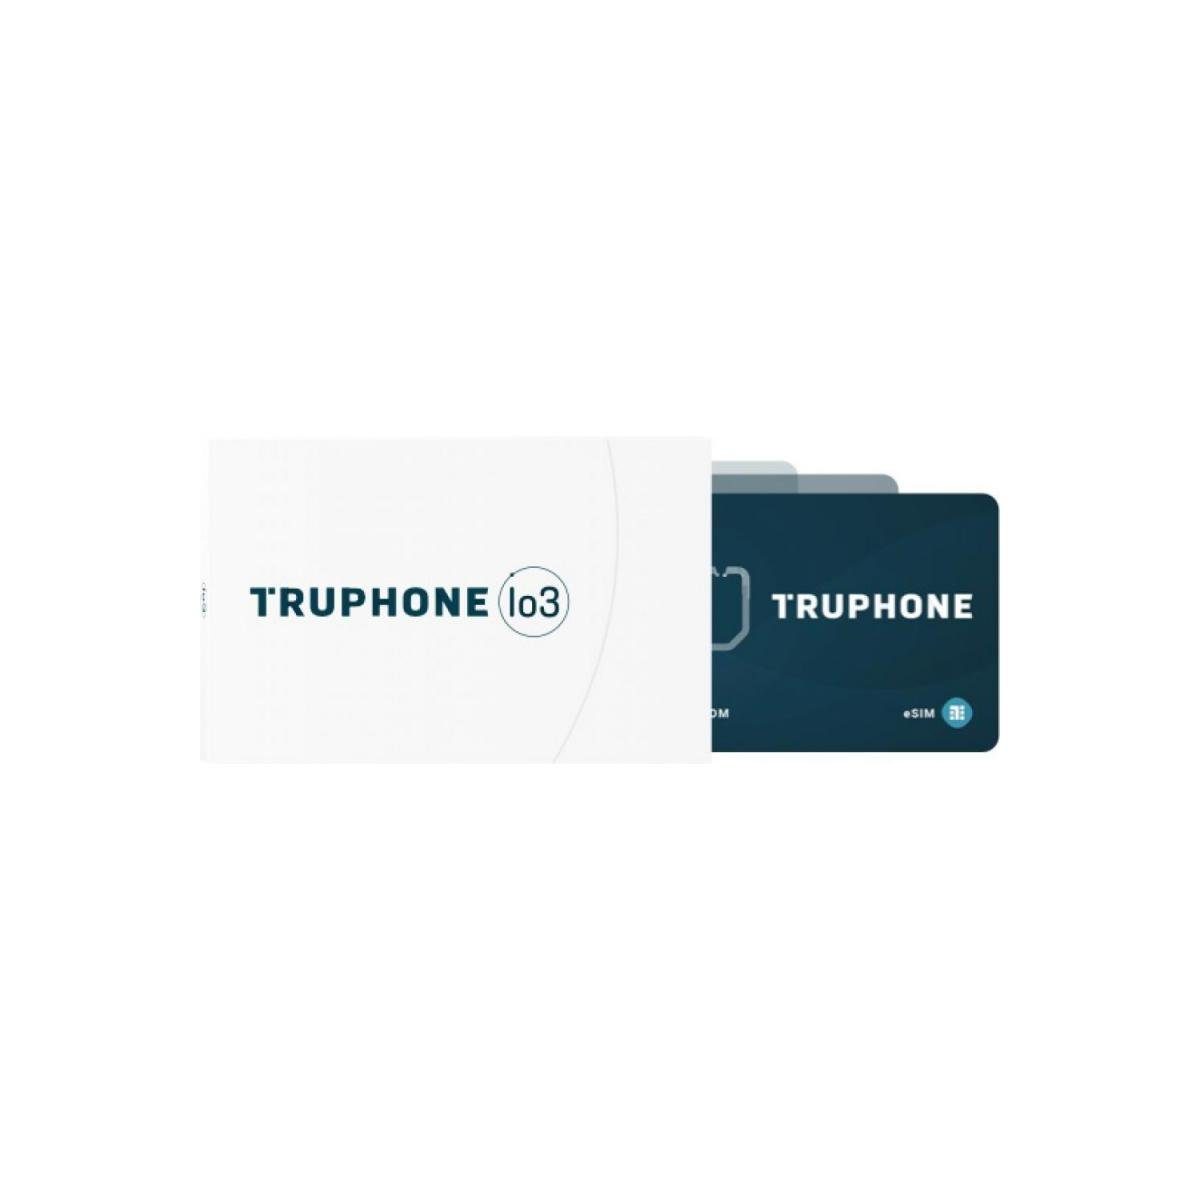 Teltonika PPEX00001240 - TRUPHONE Plastik-SIM-Karte, 500 MB, 5 Jahre GPS-Tracker